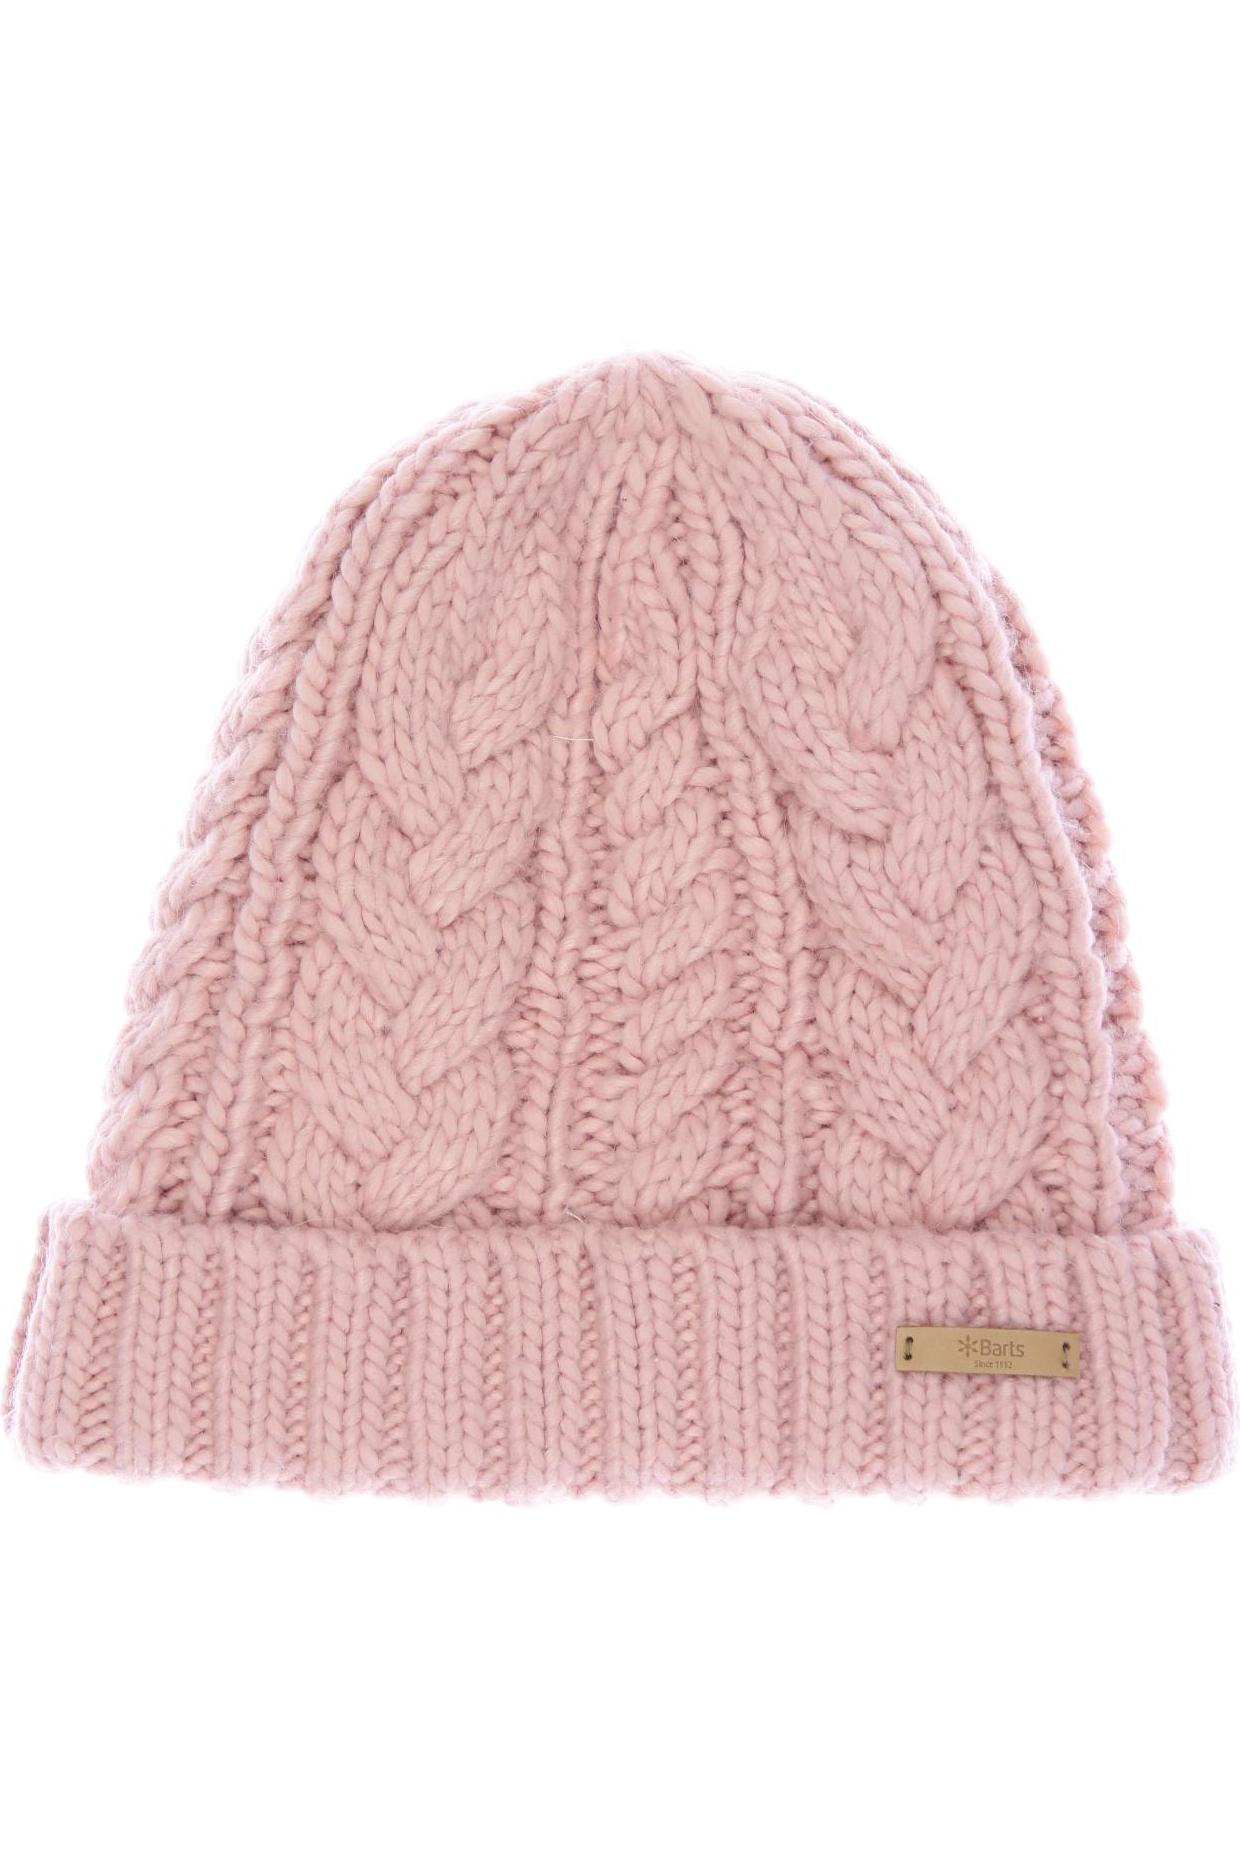 Barts Damen Hut/Mütze, pink von Barts